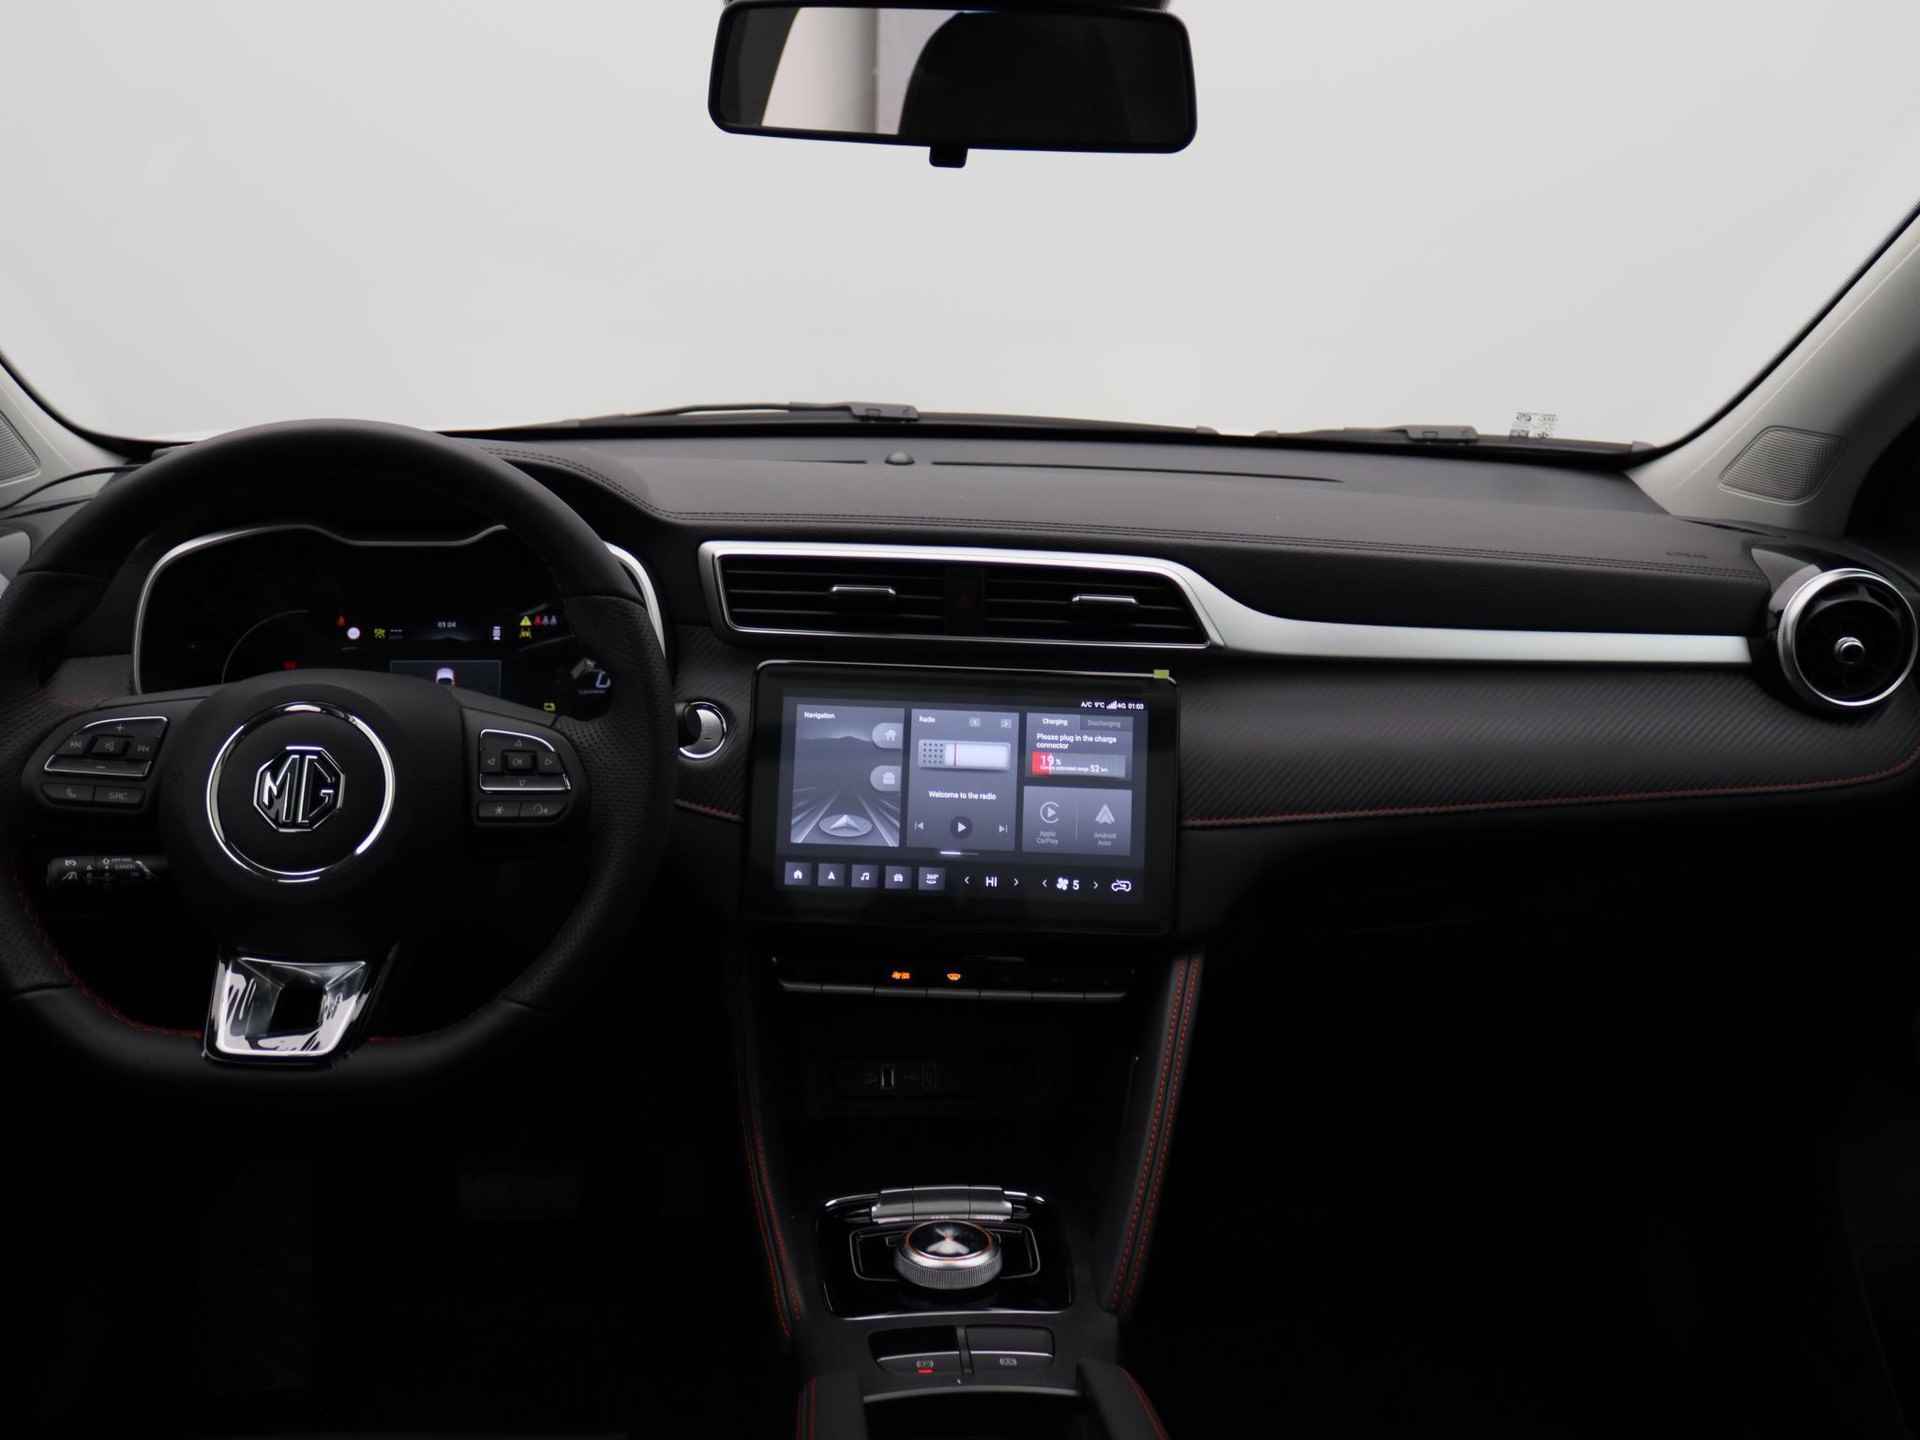 MG ZS EV Standard Range Luxury | 320 km WLTP | Navigatie | Panorama dak | 7 jaar 150.000 km garantie | Nu €2500,- Upgrade Actie Voordeel! | Wordt in alle kleuren verwacht! - 6/19